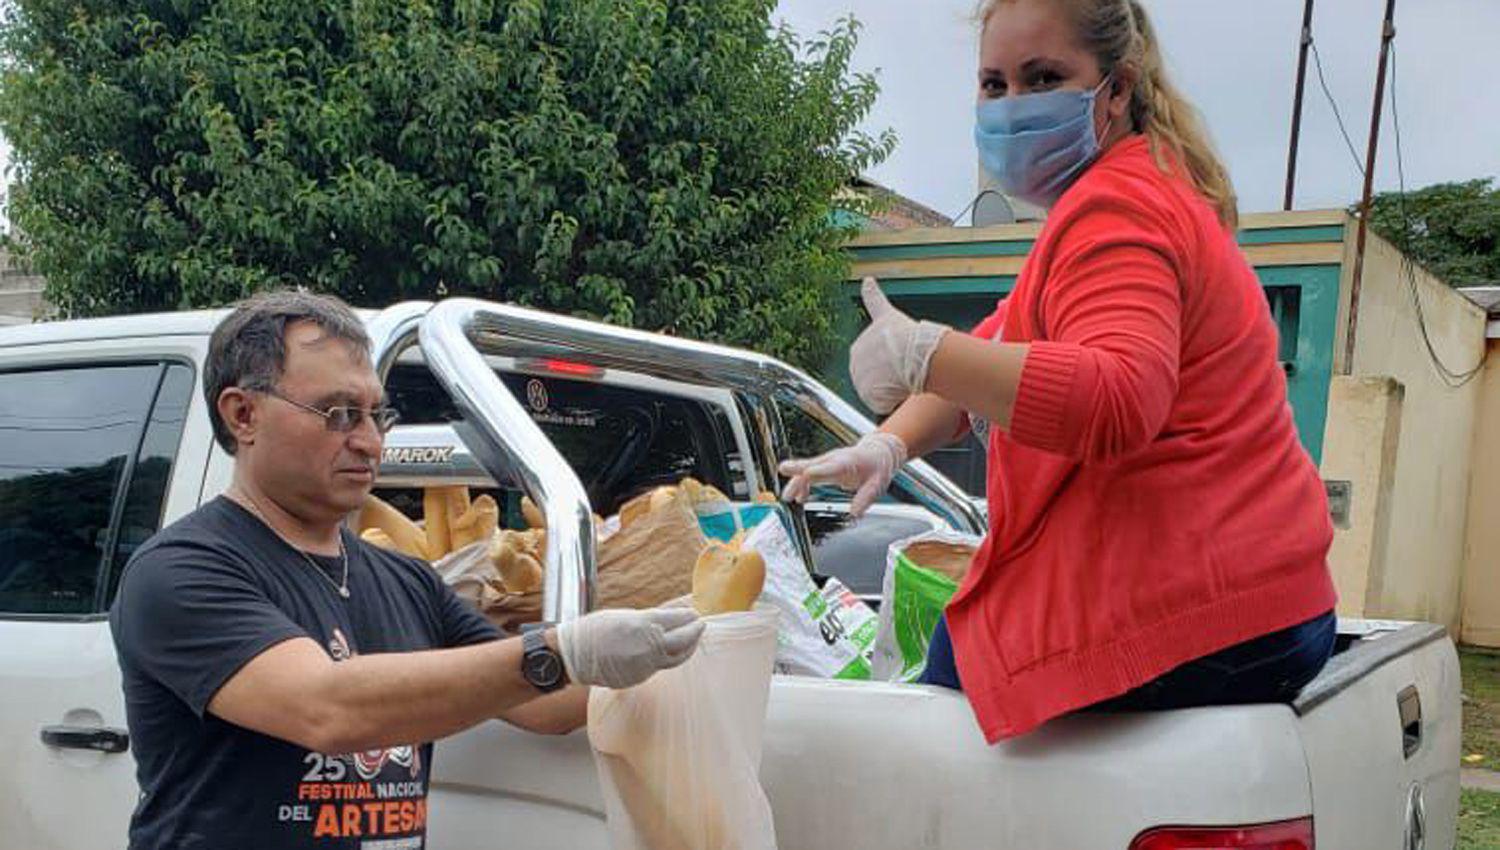 El intendente Bitar encabezó el operativo sorprendiendo a
los vecinos que recibían el pan donado por el comerciante Pablo Almirón